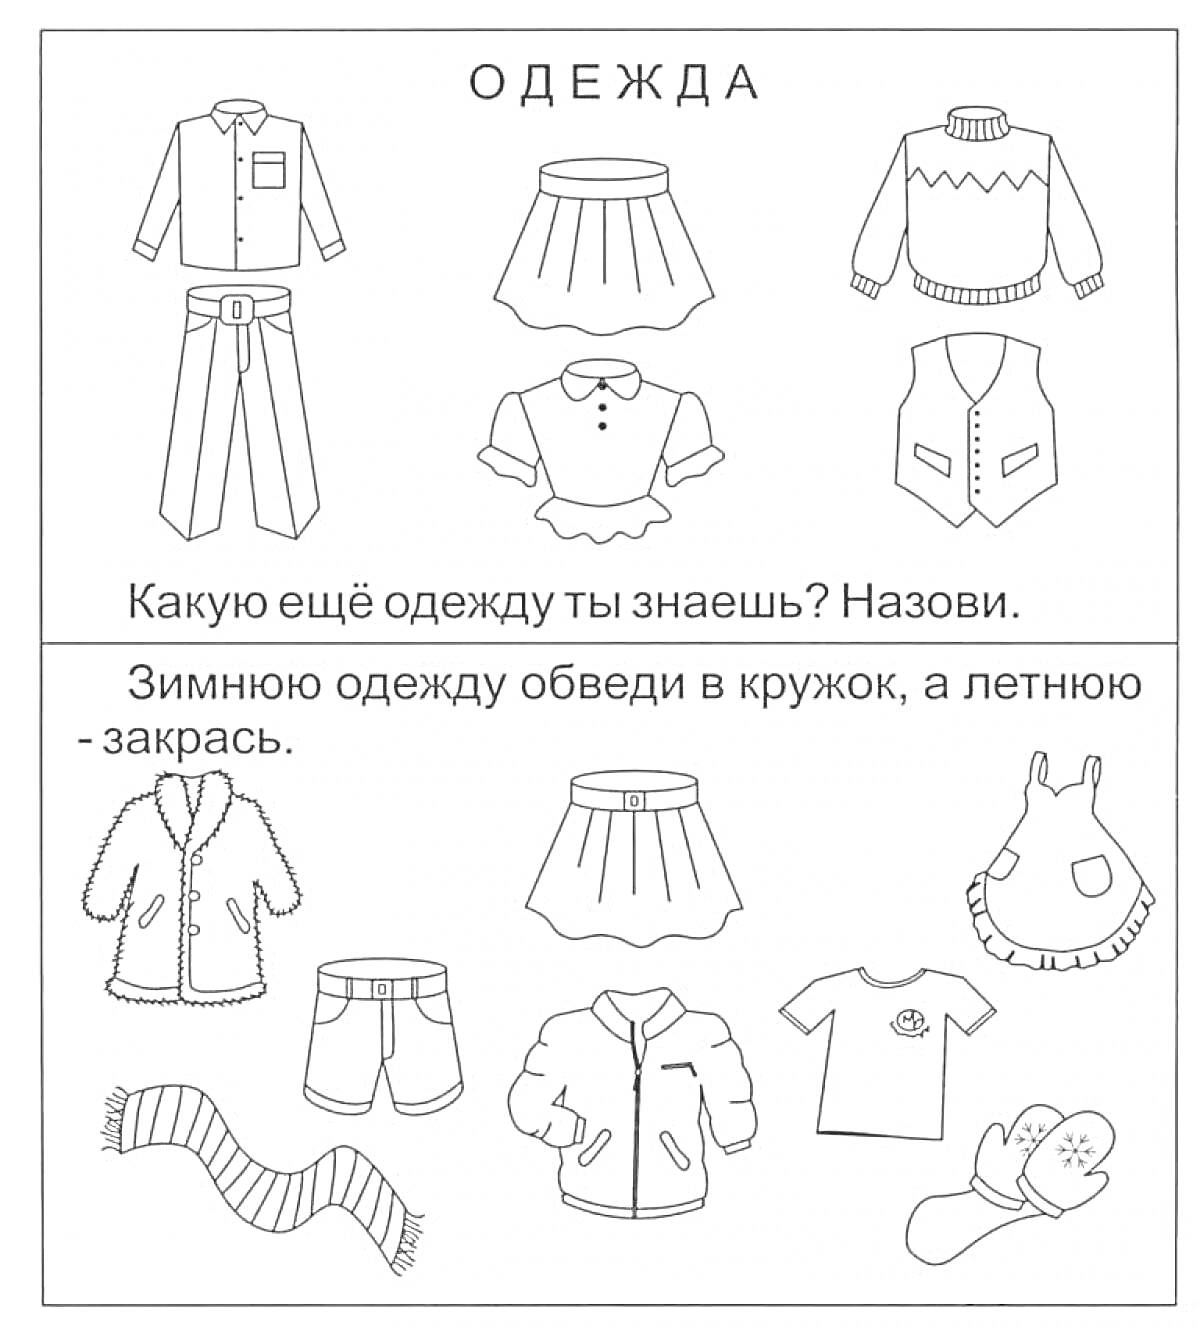 Раскраска Детская одежда, включающая рубашку с длинным рукавом, юбку, свитер, брюки с ремнём, рубашку с коротким рукавом, жилет, пальто, шорты, жакет, платье, футболку, варежки и шарф.